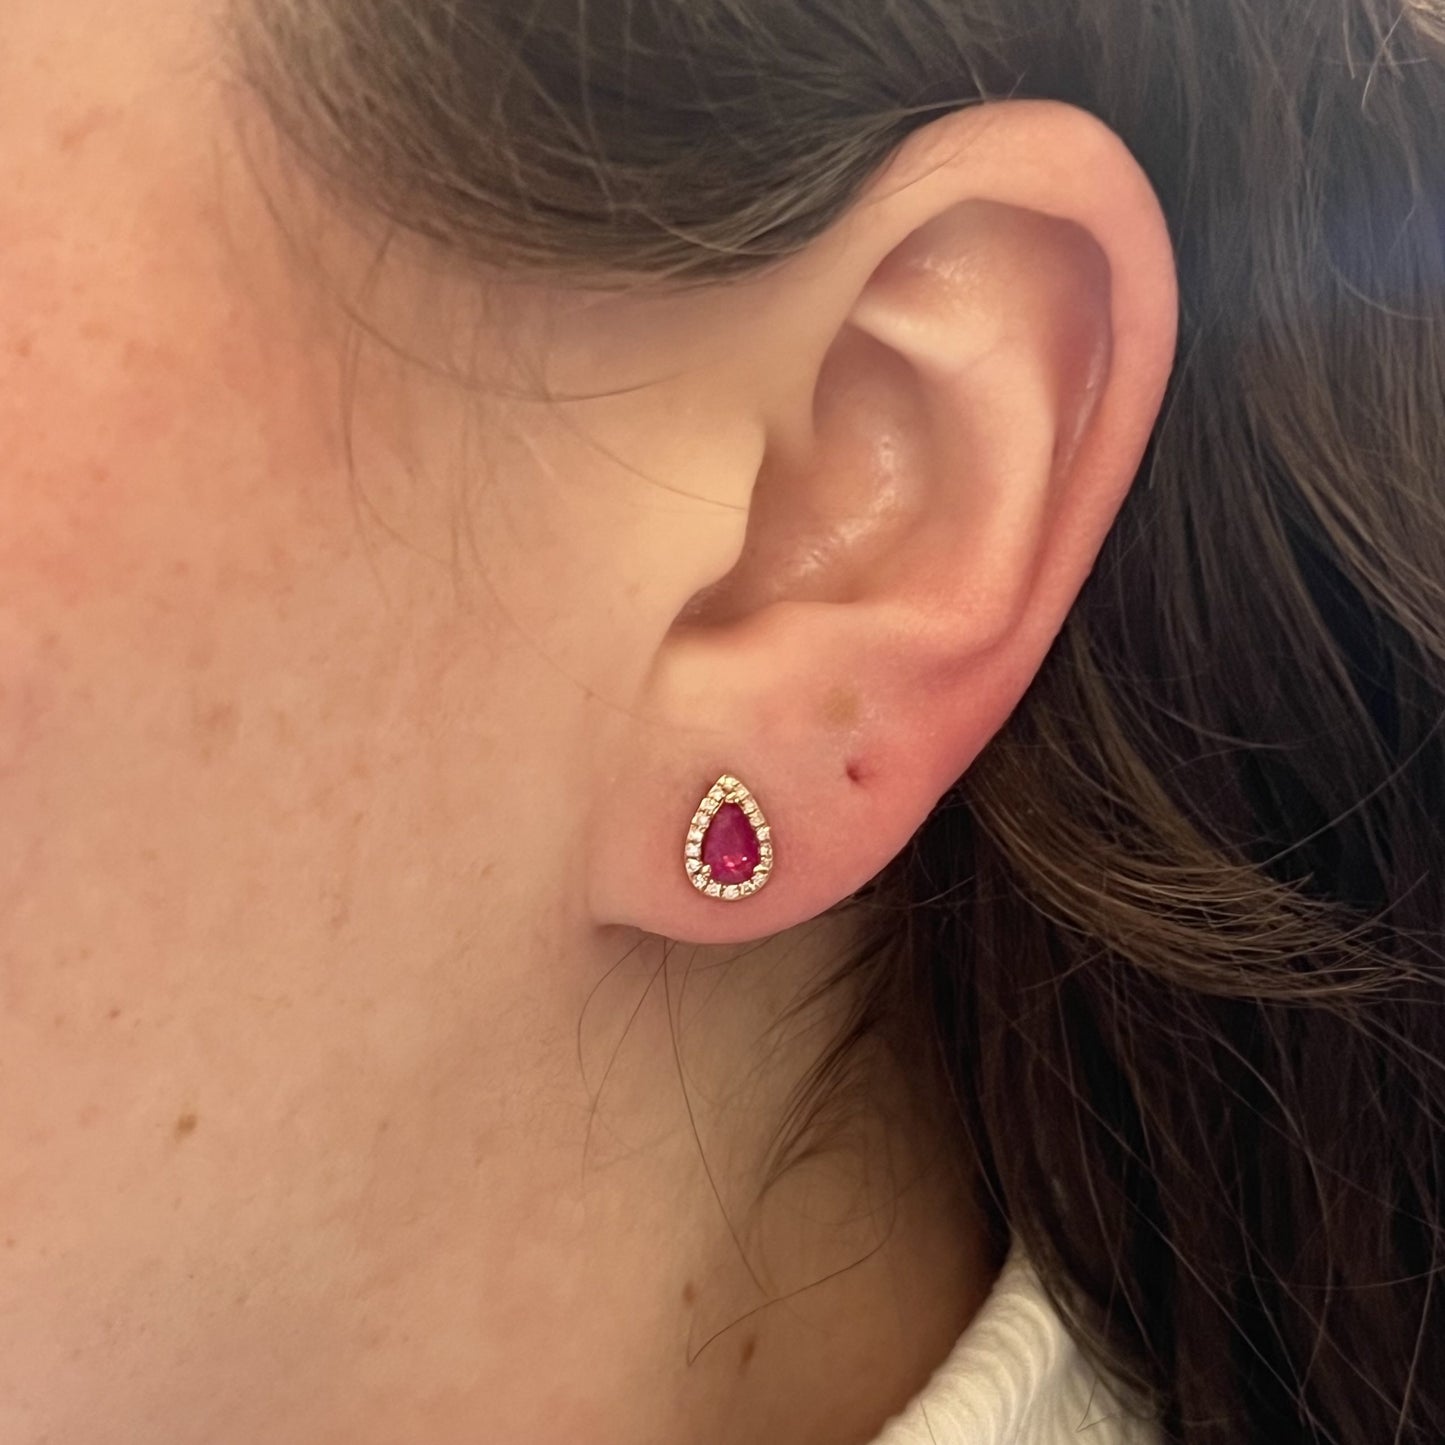 Effy Pear Cut Ruby & Diamond Stud Earrings in 14k Rose Gold